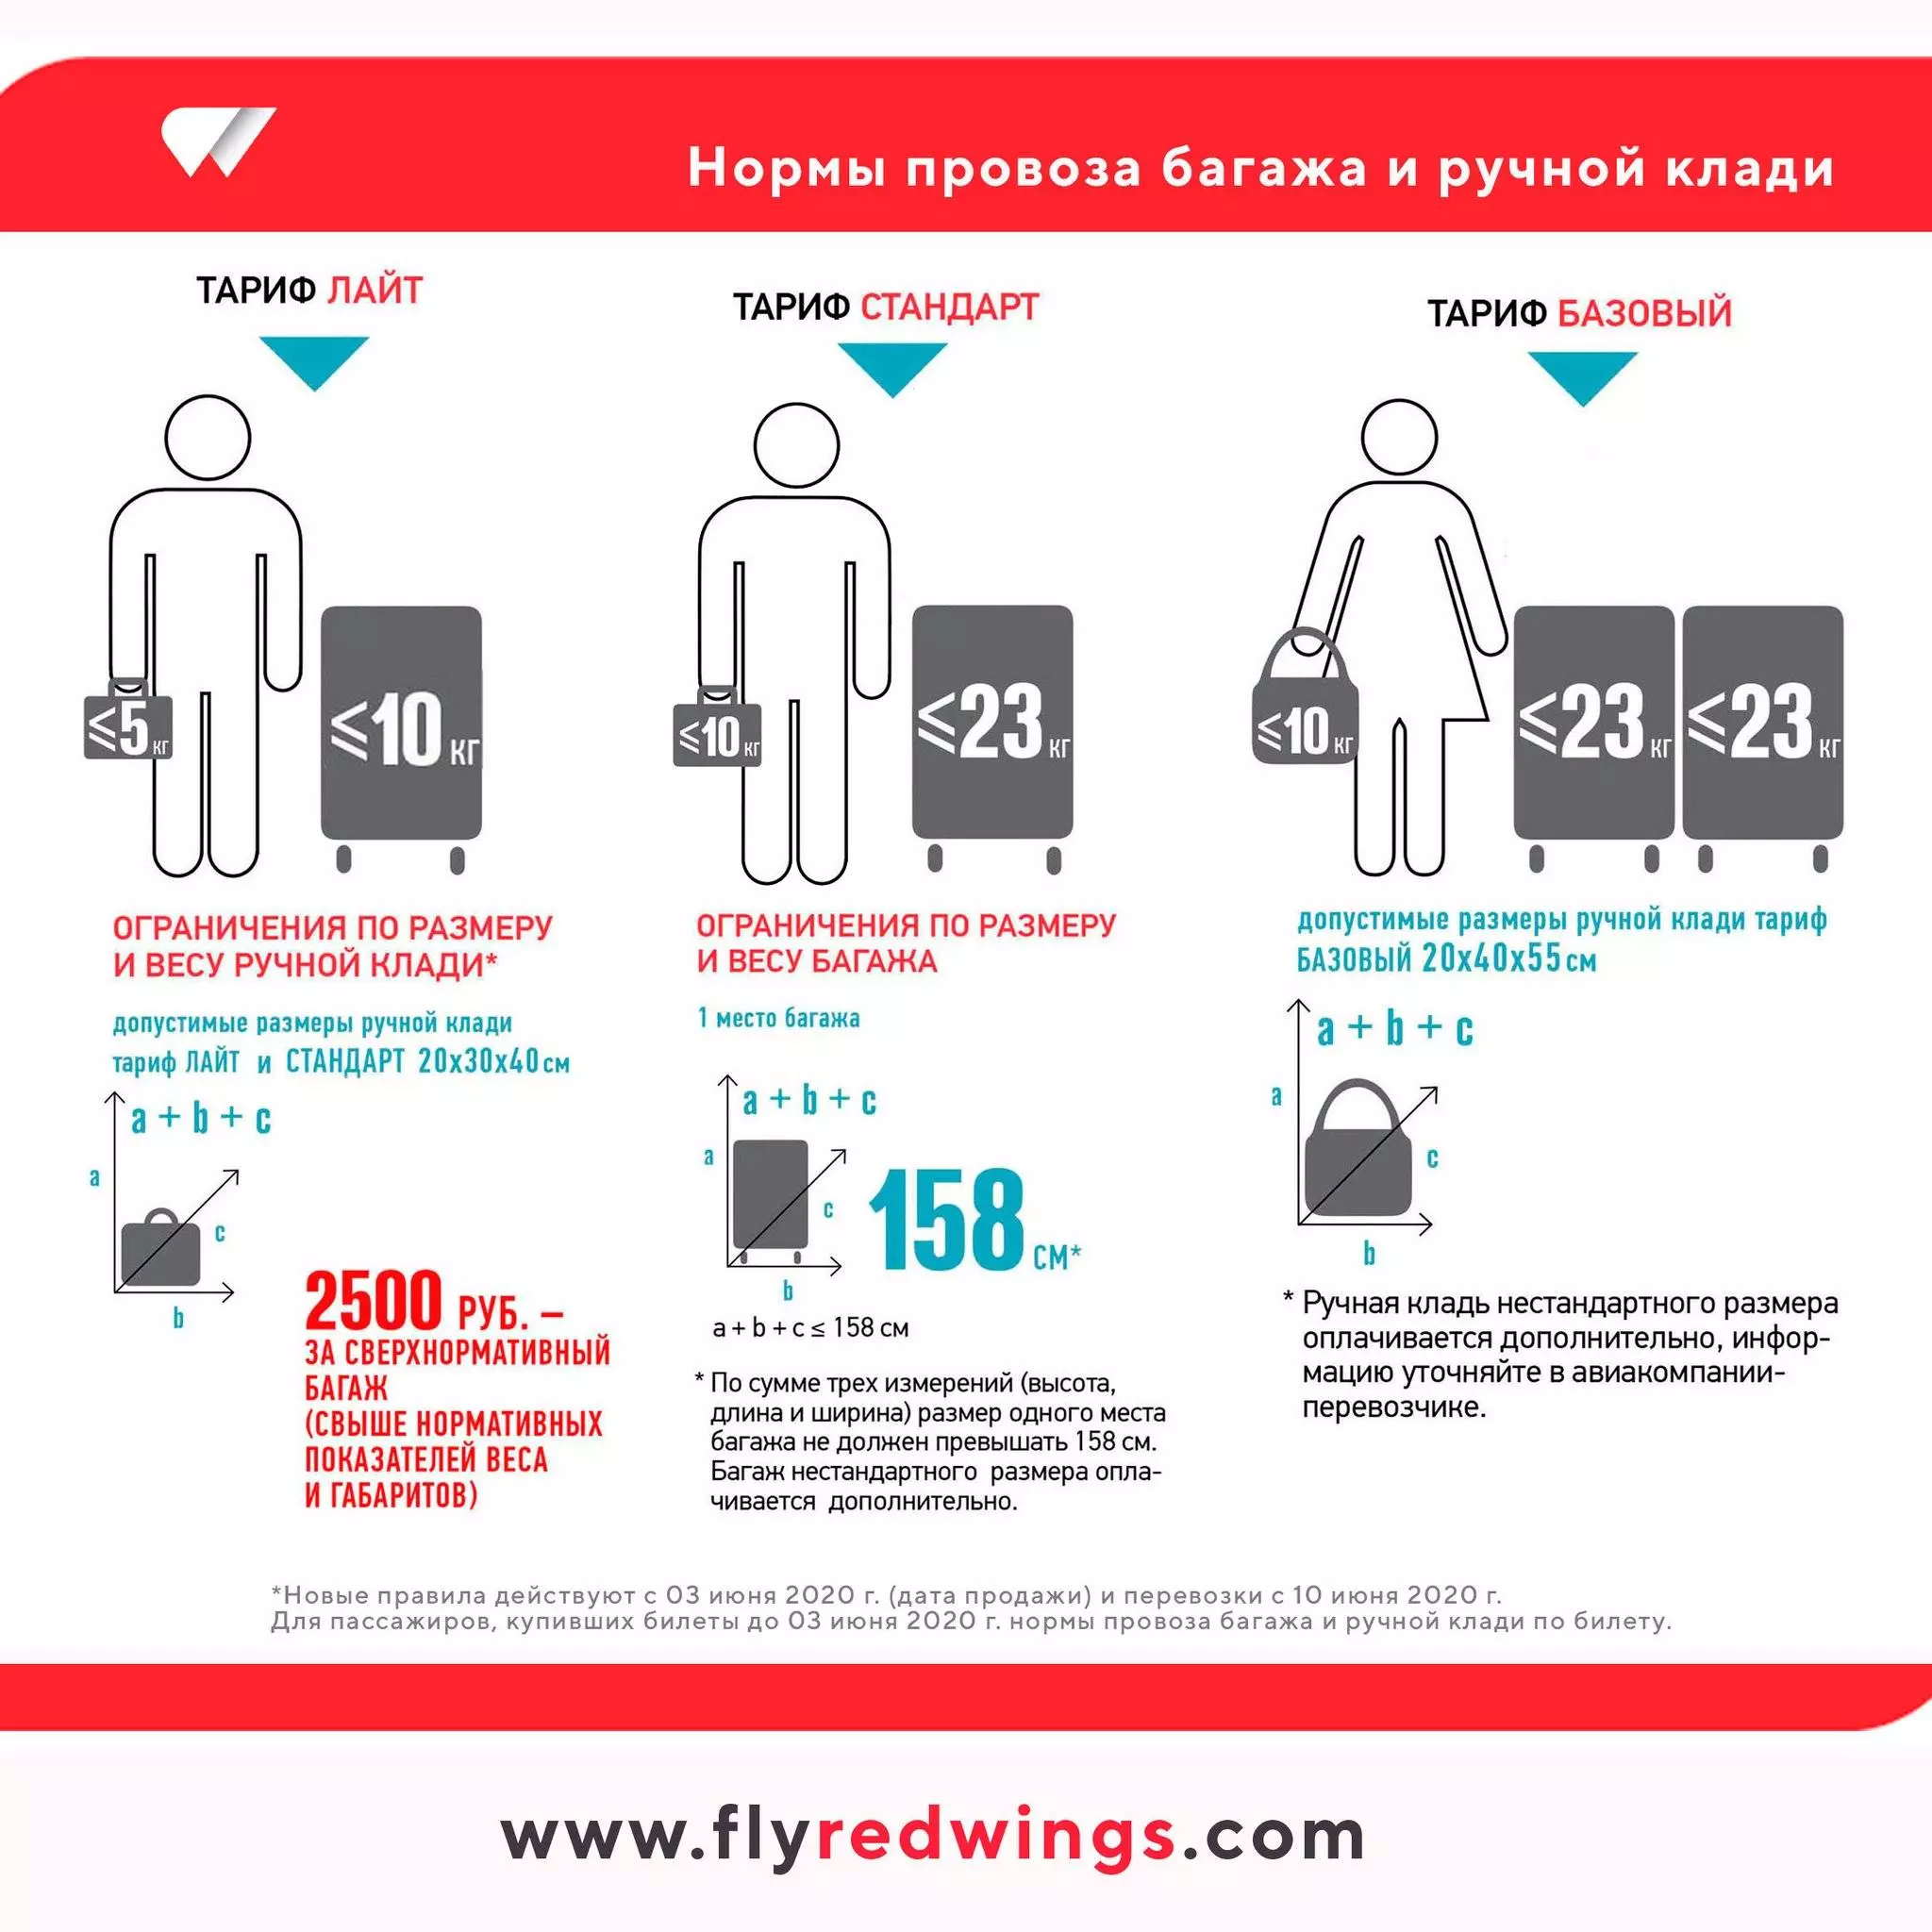 Провоз багажа в самолете: новые правила и стандарты 2020 | авиакомпании и авиалинии россии и мира